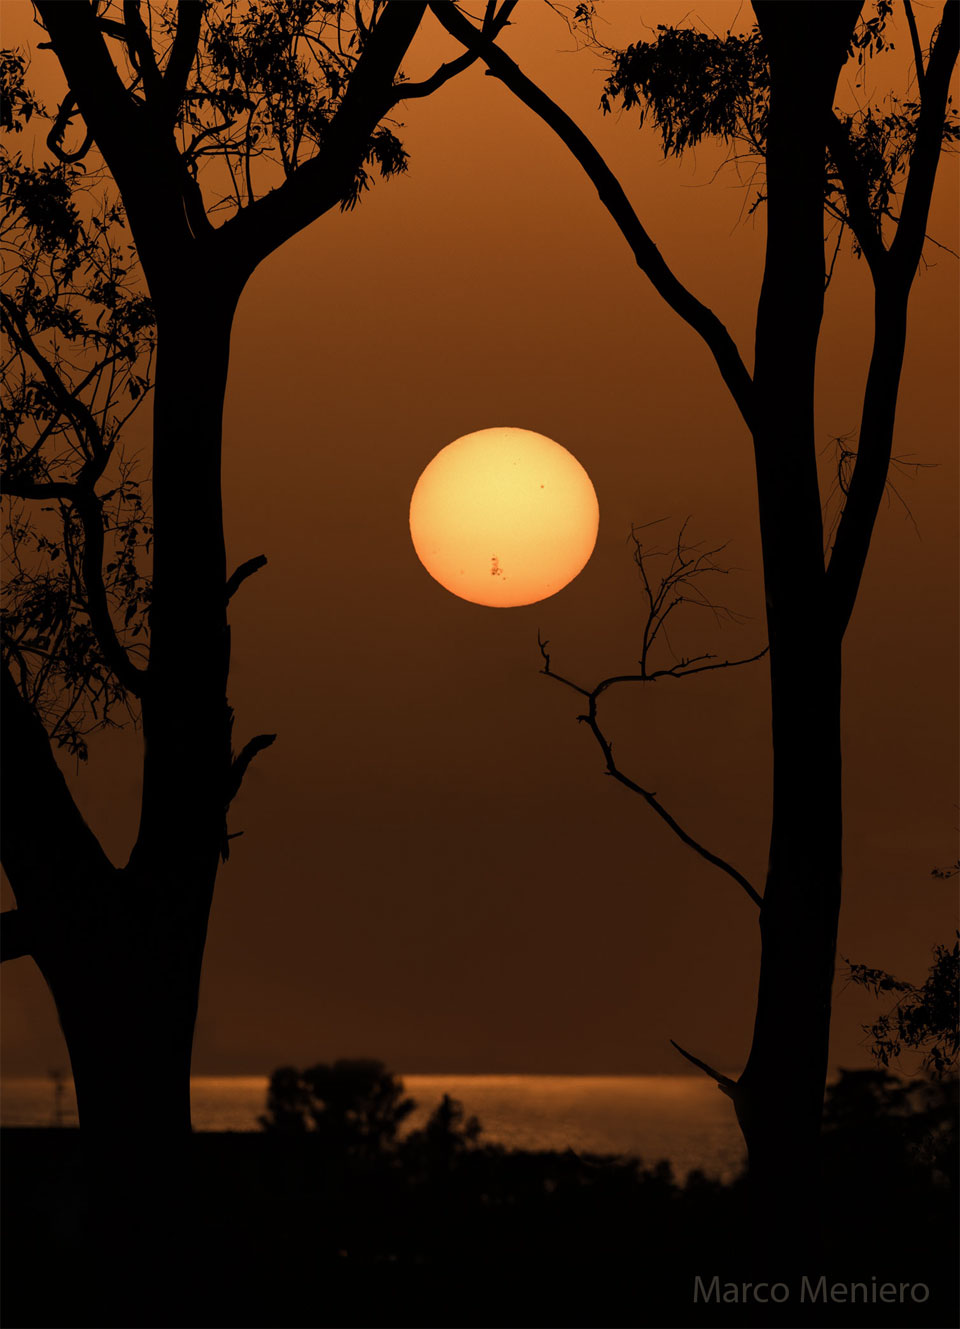 在水面上和前景树木之间可以看到远处的太阳。太阳的下部是巨大的活跃区AR 3664可见的黑暗的太阳黑子。有关更多详细信息，请参阅说明。